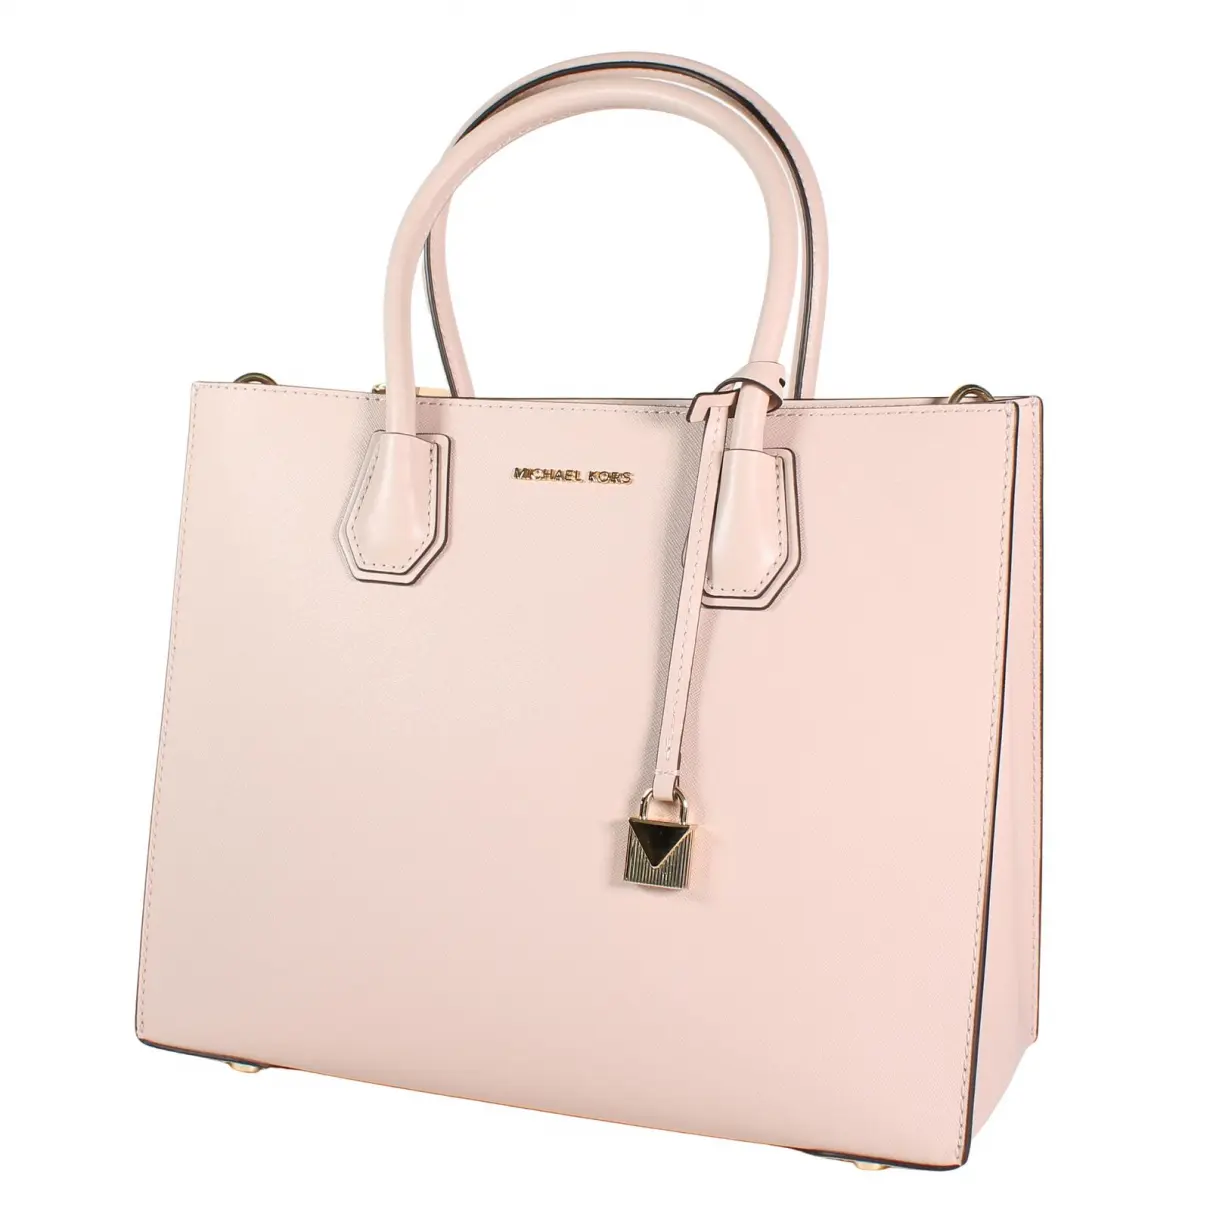 Buy Michael Kors Mercer leather handbag online